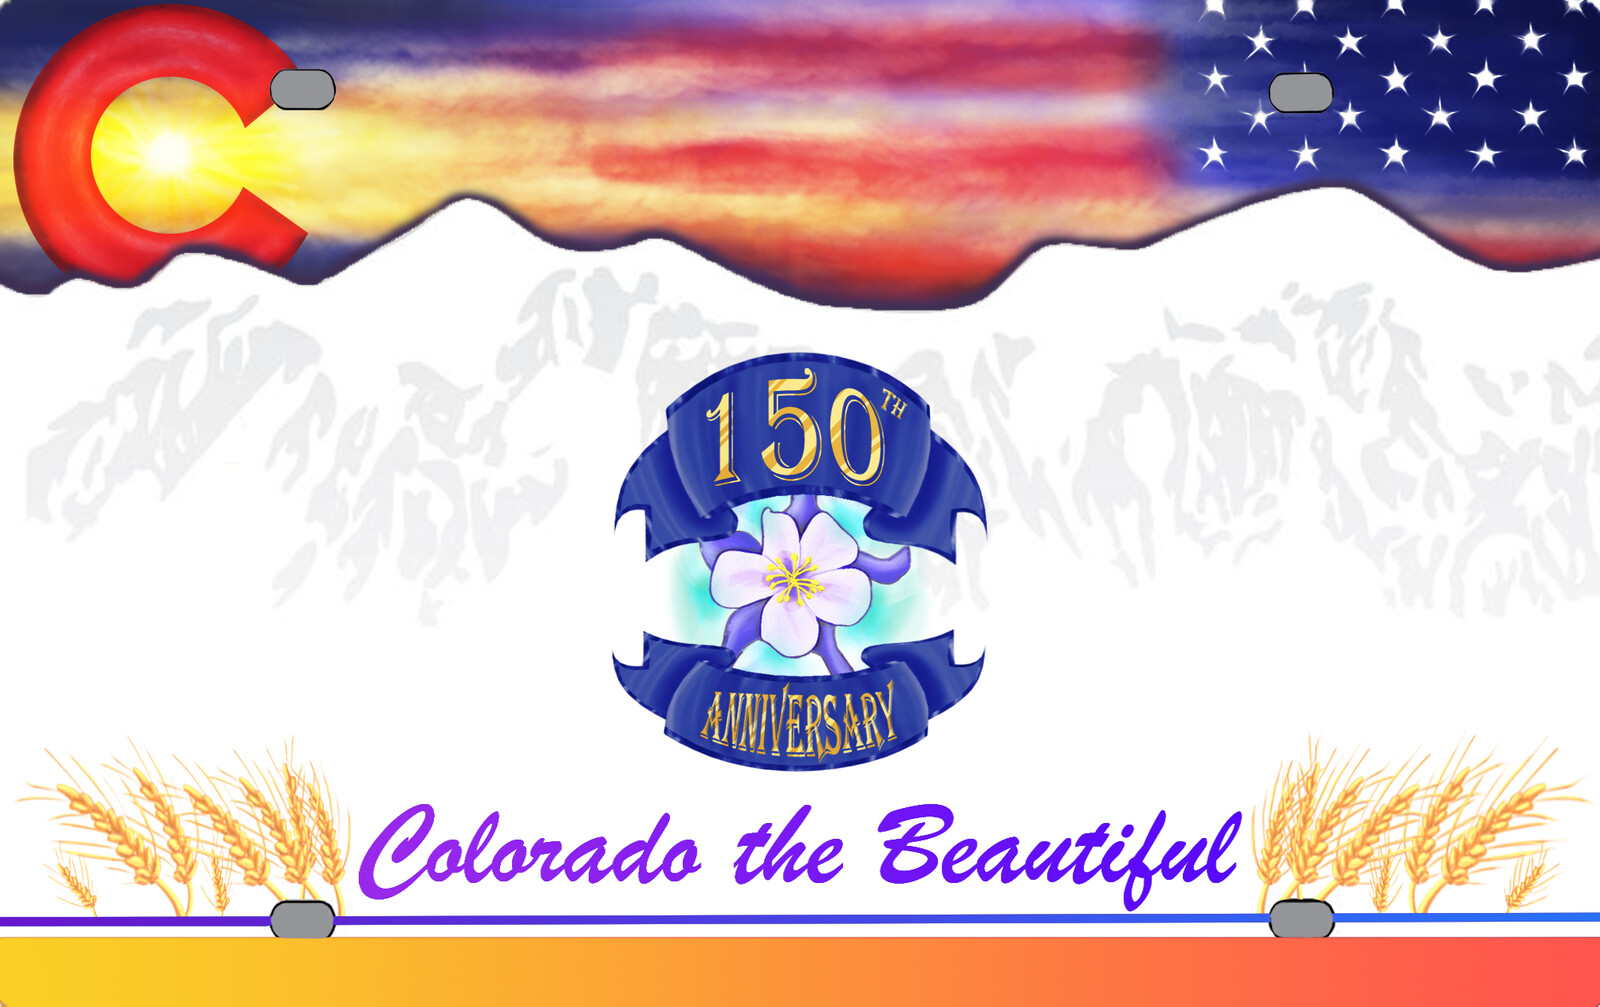 Colorado License Plate Design (DMV Contest Entry)